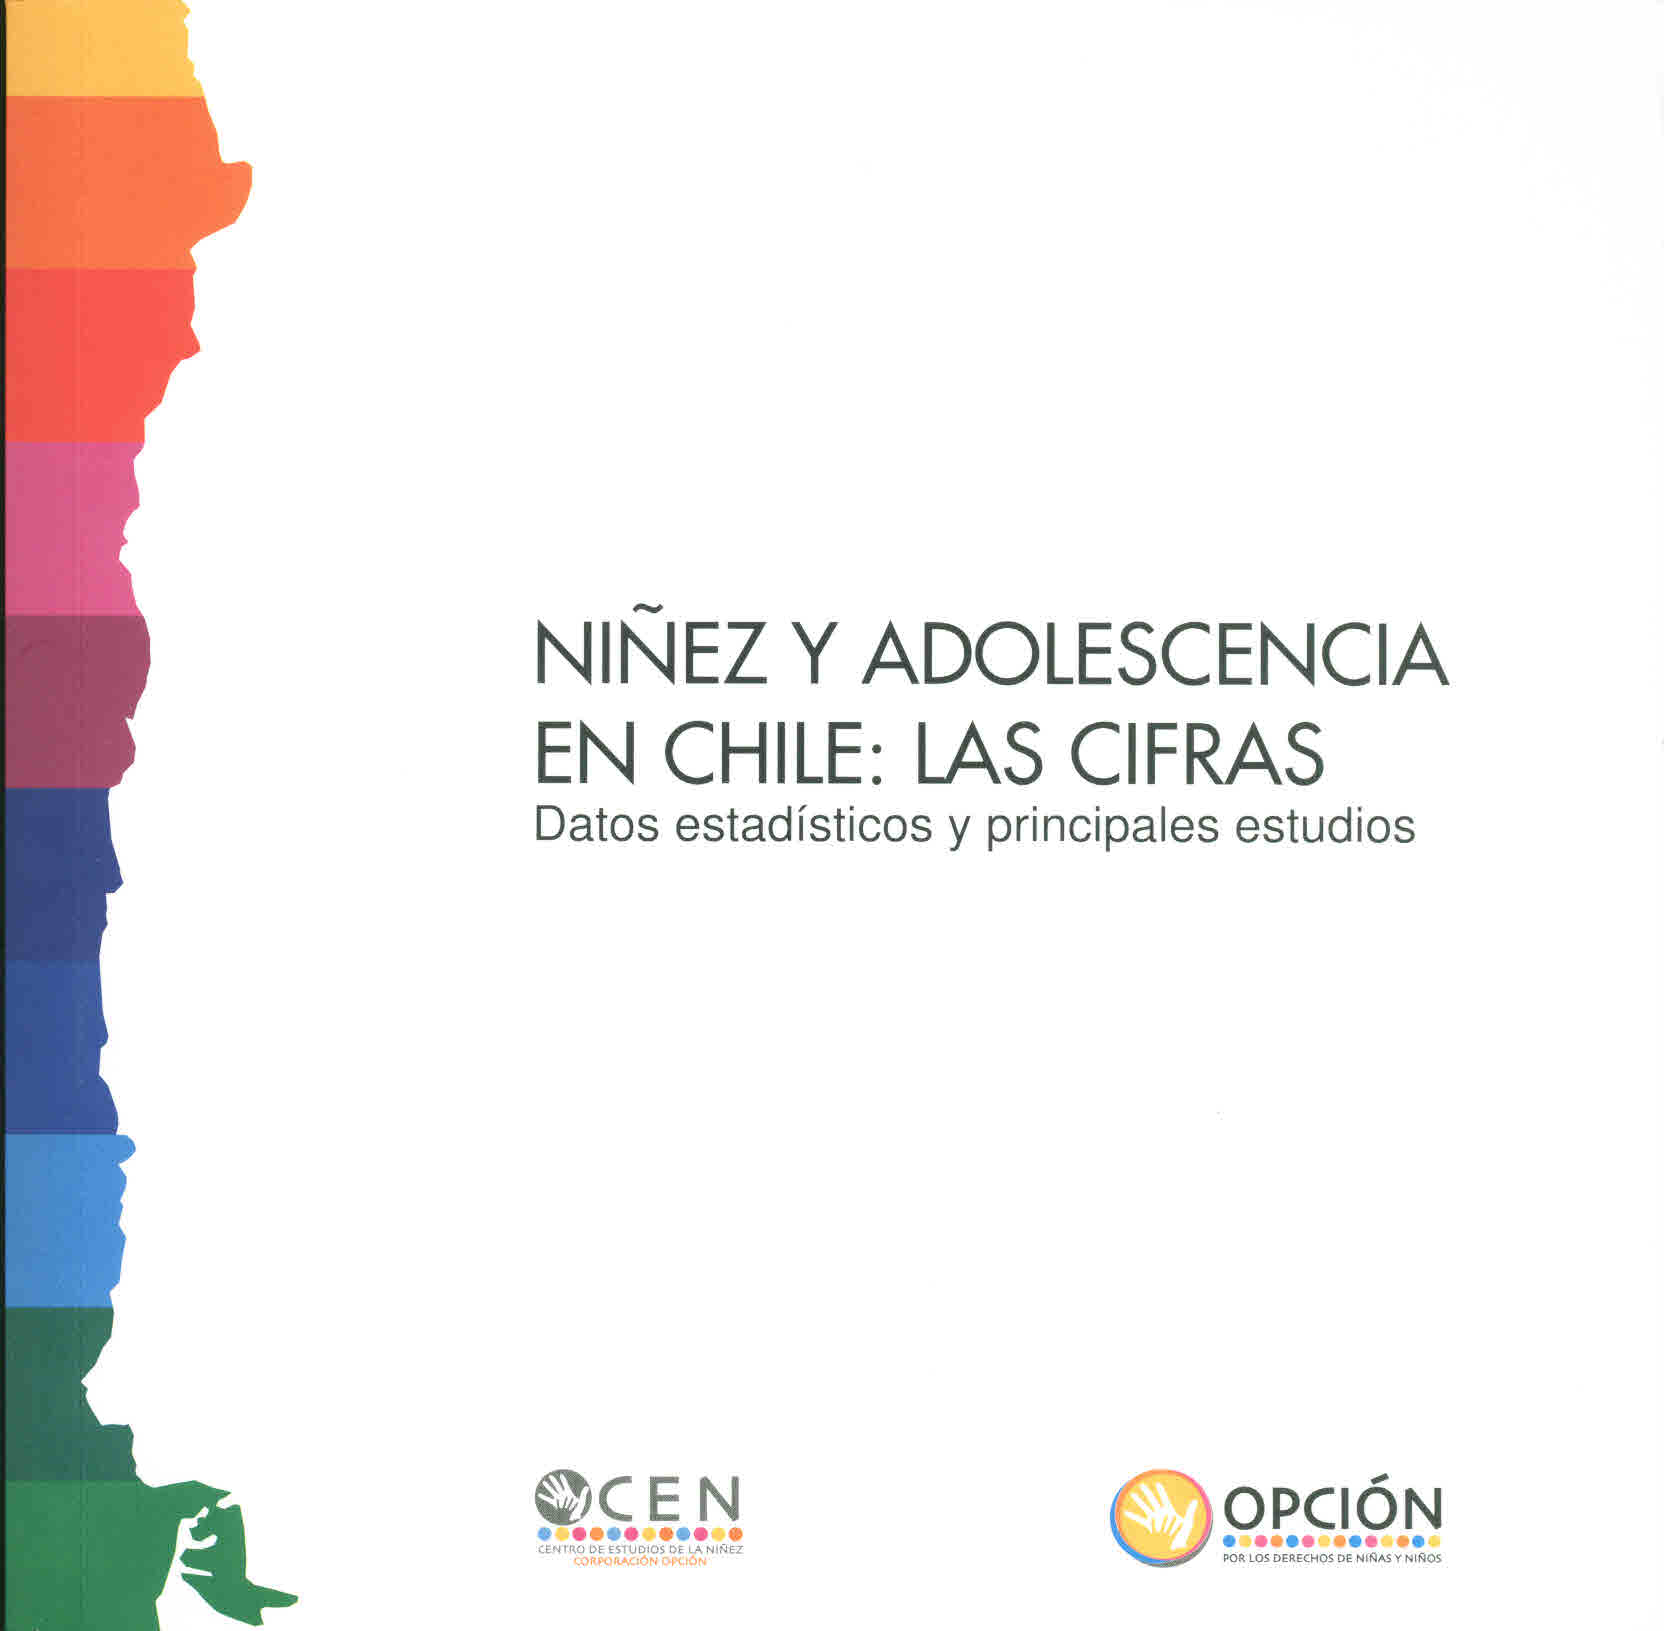 Niñez y adolescencia en Chile: Las cifras. Datos y principales estudios